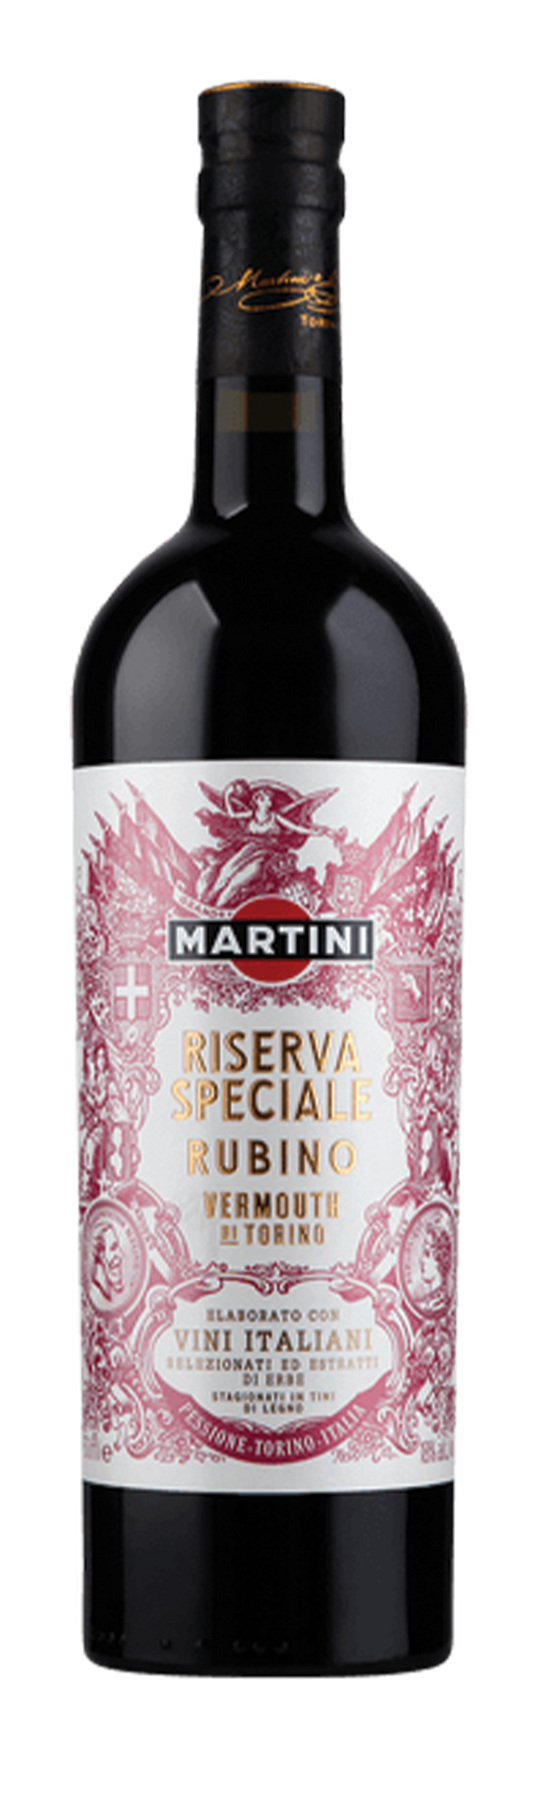 Martini Riserva Speciale Rubino 18% 75cl Vermouth di Torino